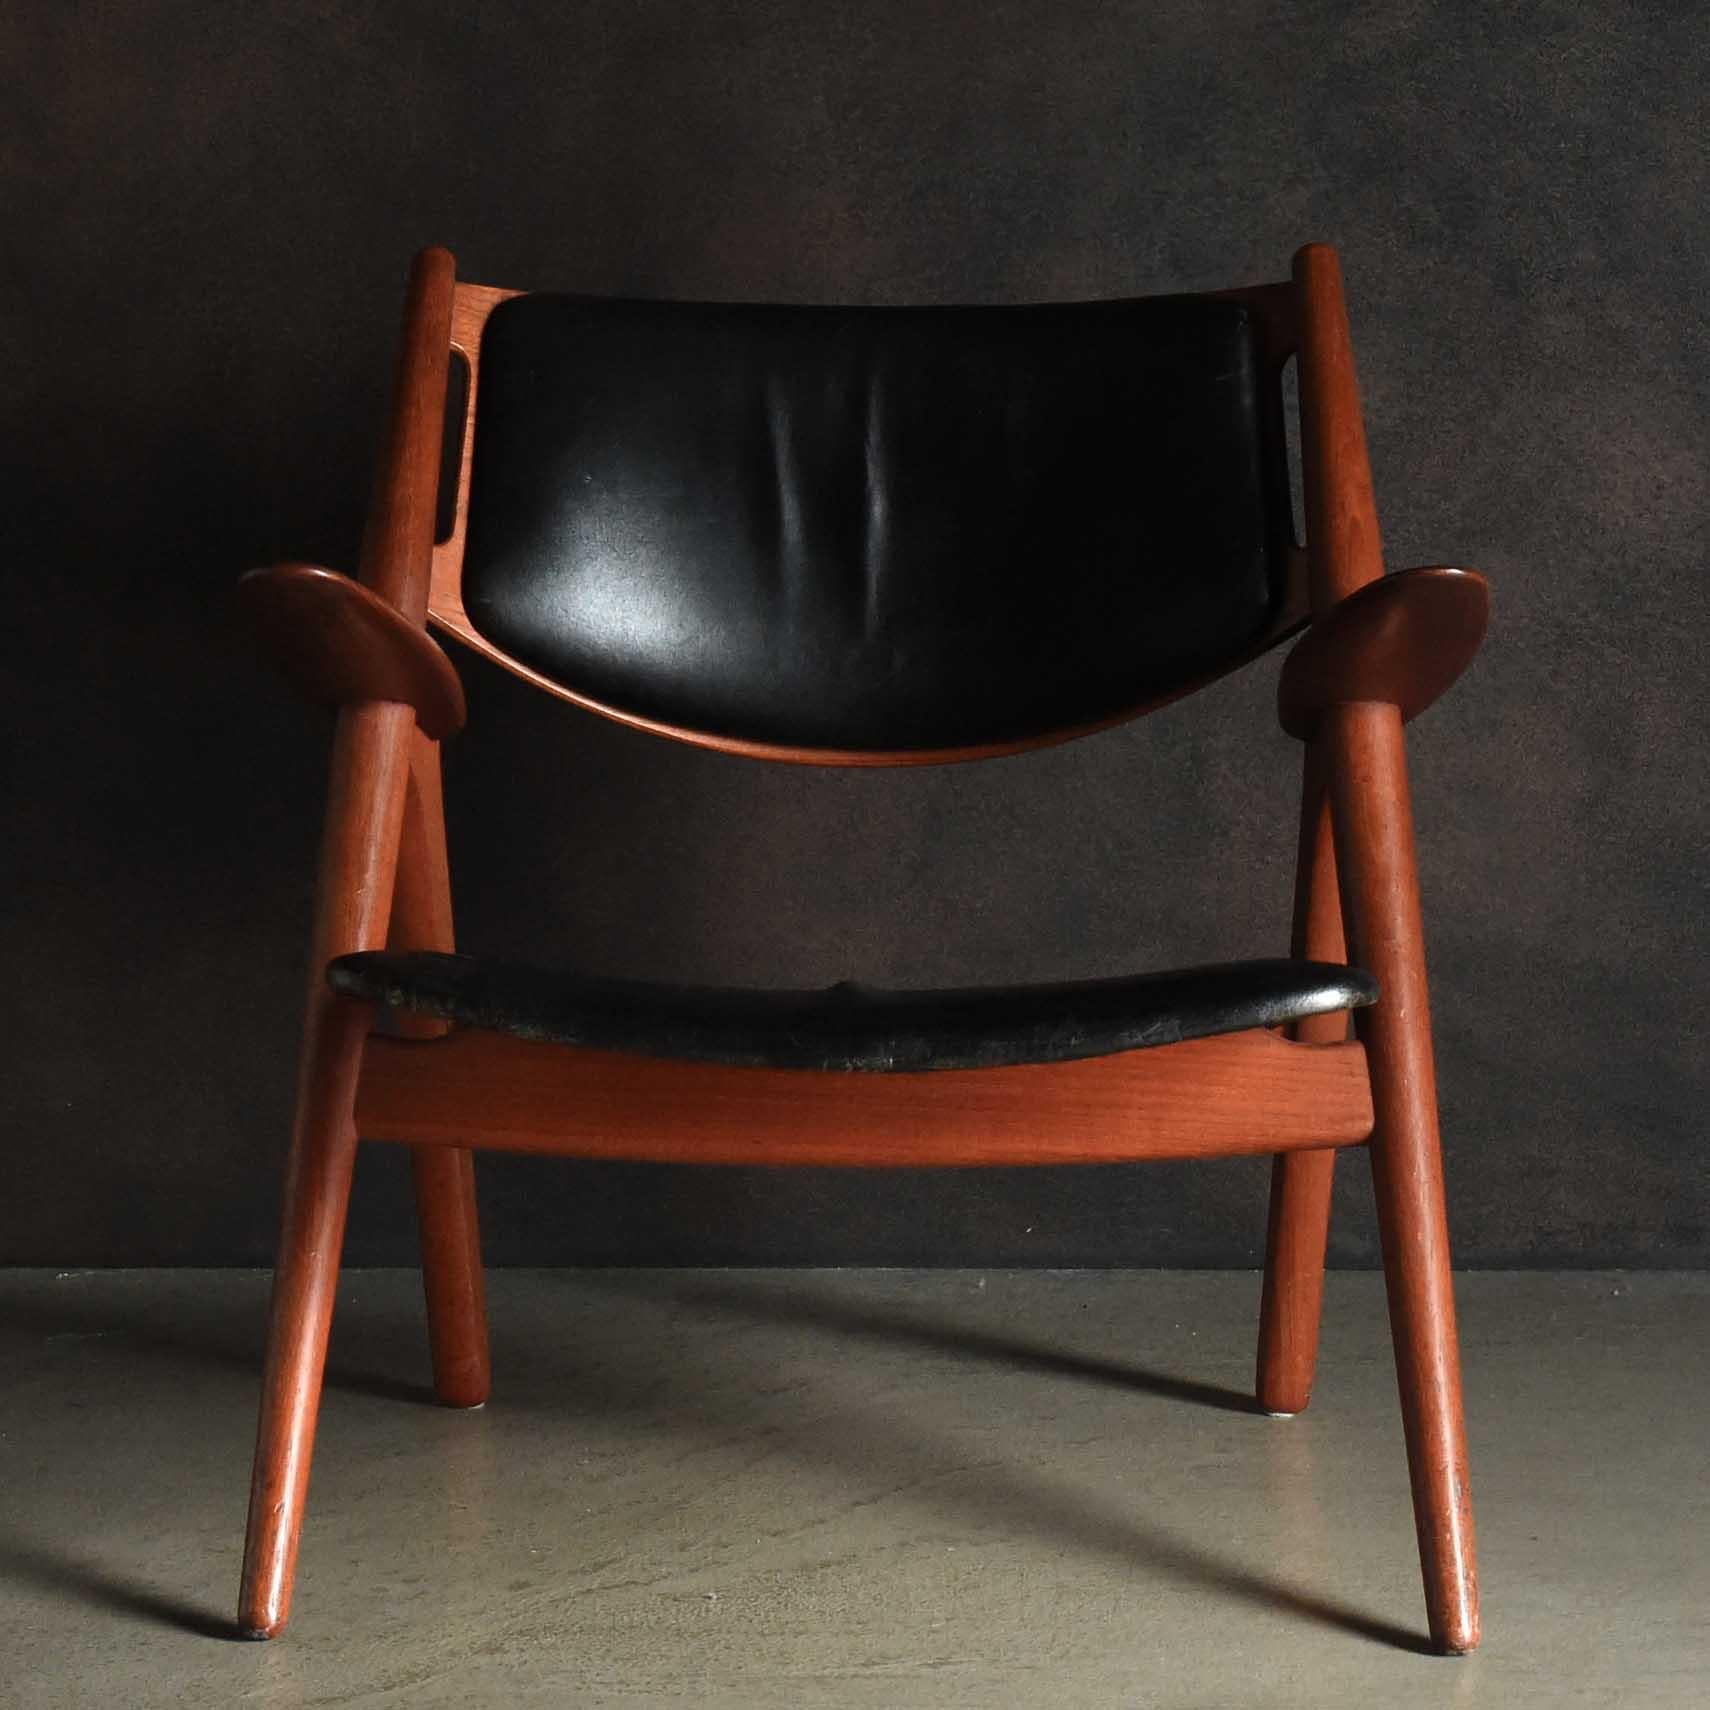 La CH28 (Design/One) est une chaise fonctionnelle et sculpturale créée par Hans J. Wegner en 1952. Cette pièce exemplaire incarne la vision de Wegner de la beauté et de la fonction, réalisée par une forme innovante et une attention délibérée aux